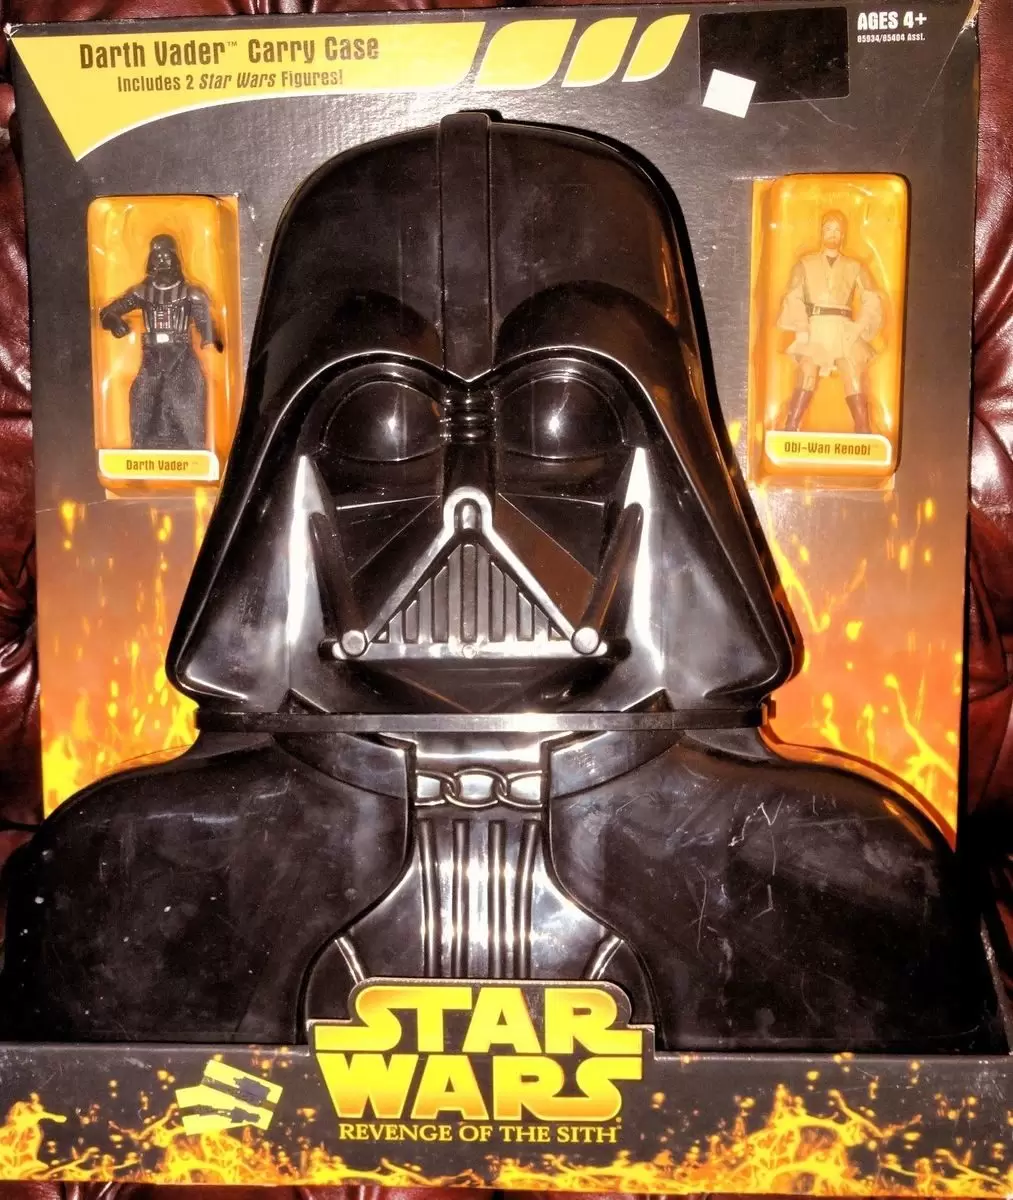 Revenge of the Sith - Darth Vader Carry case (Vader + Kenobi)